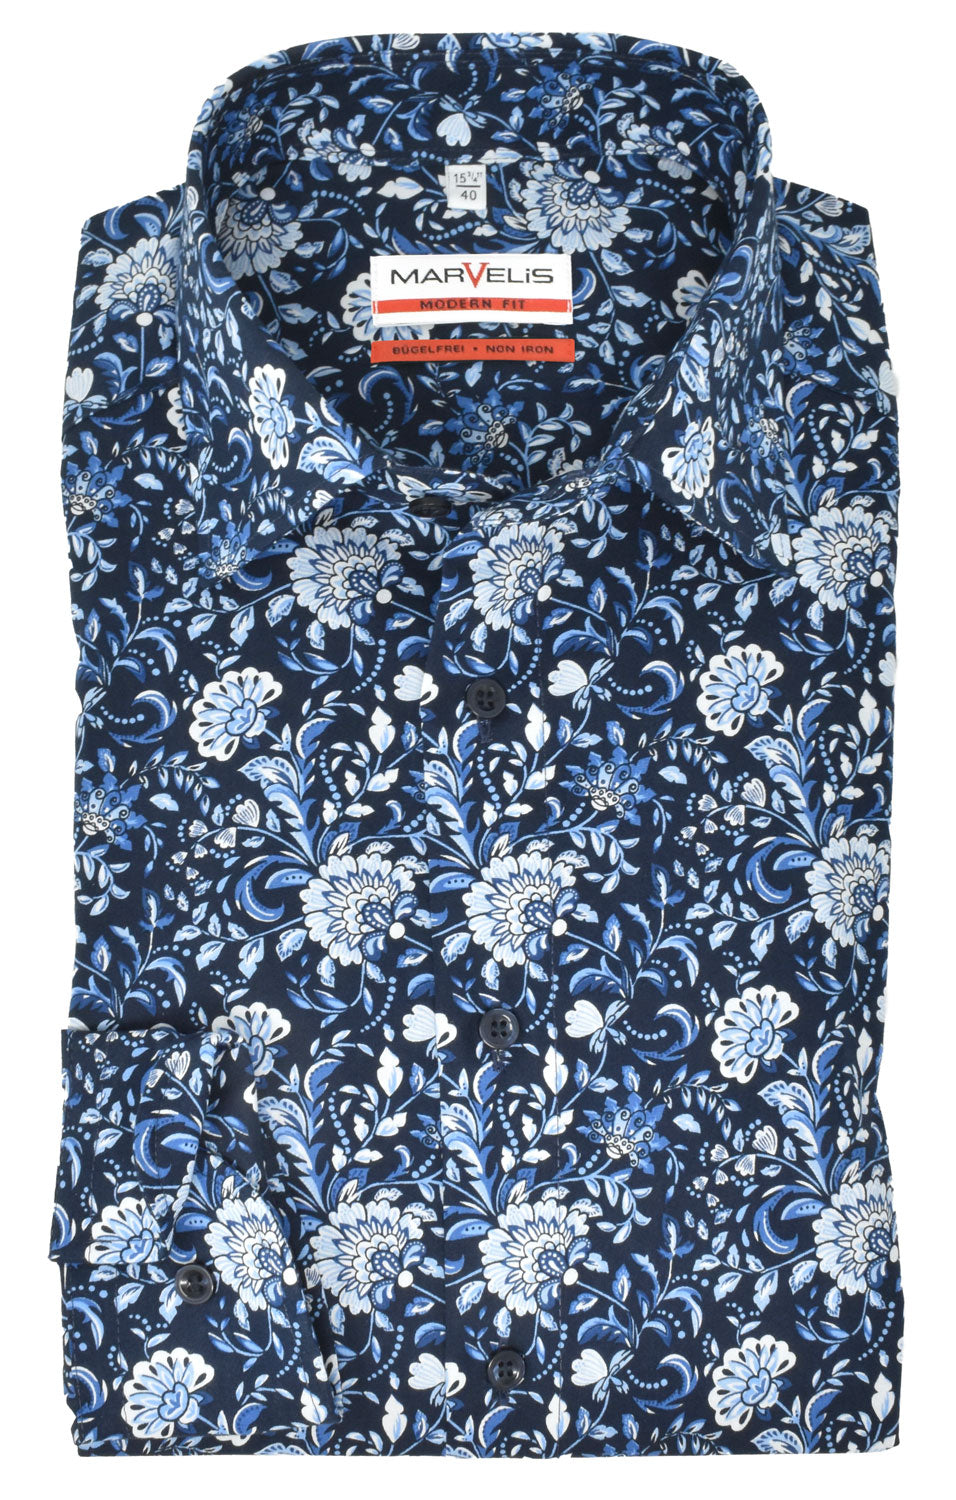 Marvelis Herren Businesshemd Modern Fit Kent Kragen Extra Langer Arm 69cm Florales Muster Blau